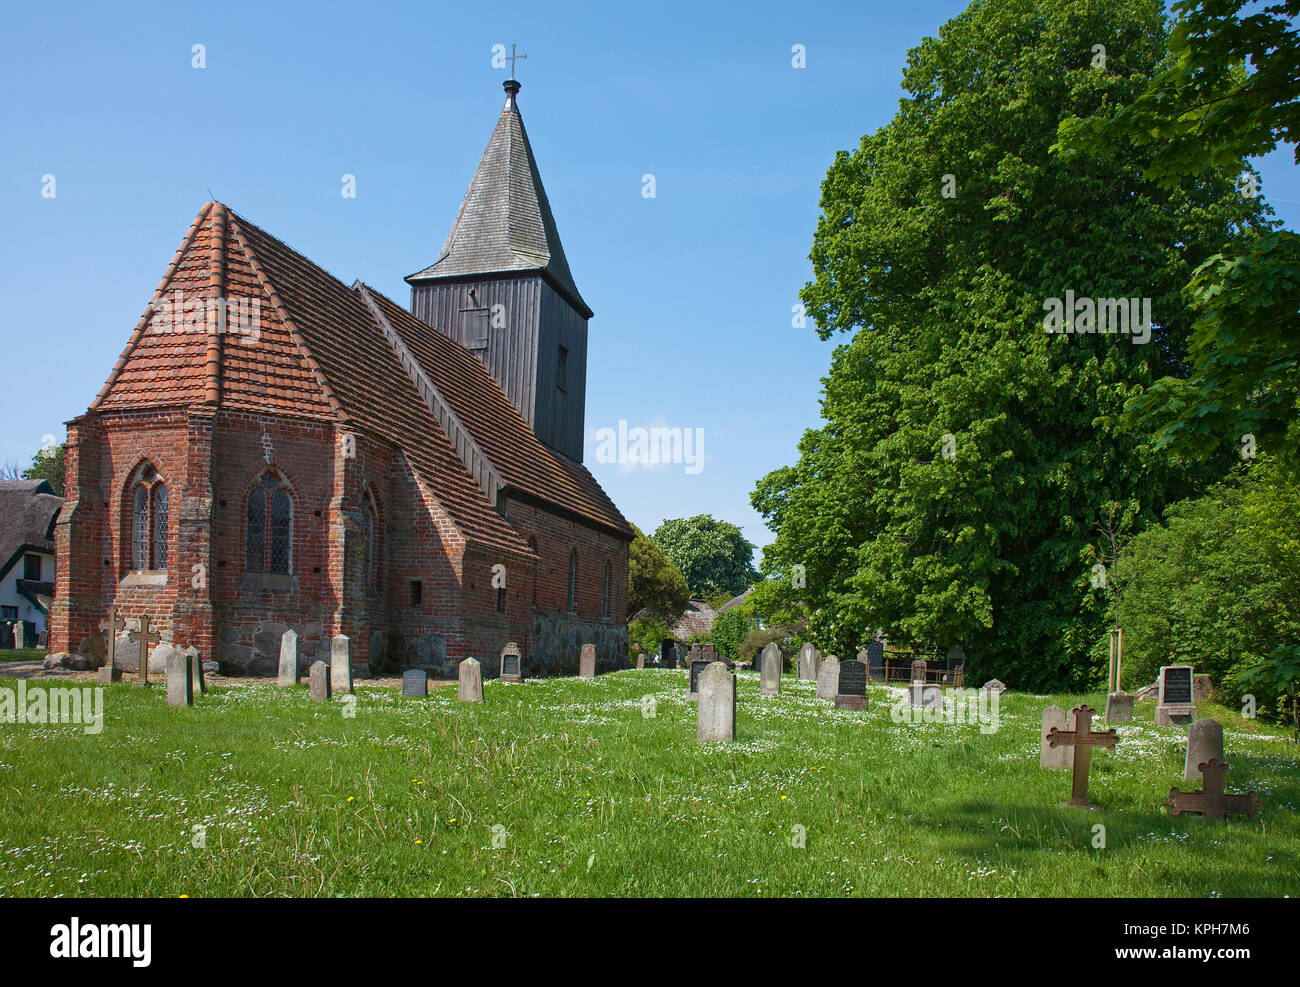 Dorfkirche mit hölzernen Turm, gotic Stil, Friedhof, Gross Zicker, Insel Rügen, Mecklenburg-Vorpommern, Ostsee, Deutschland, Europa Stockfoto